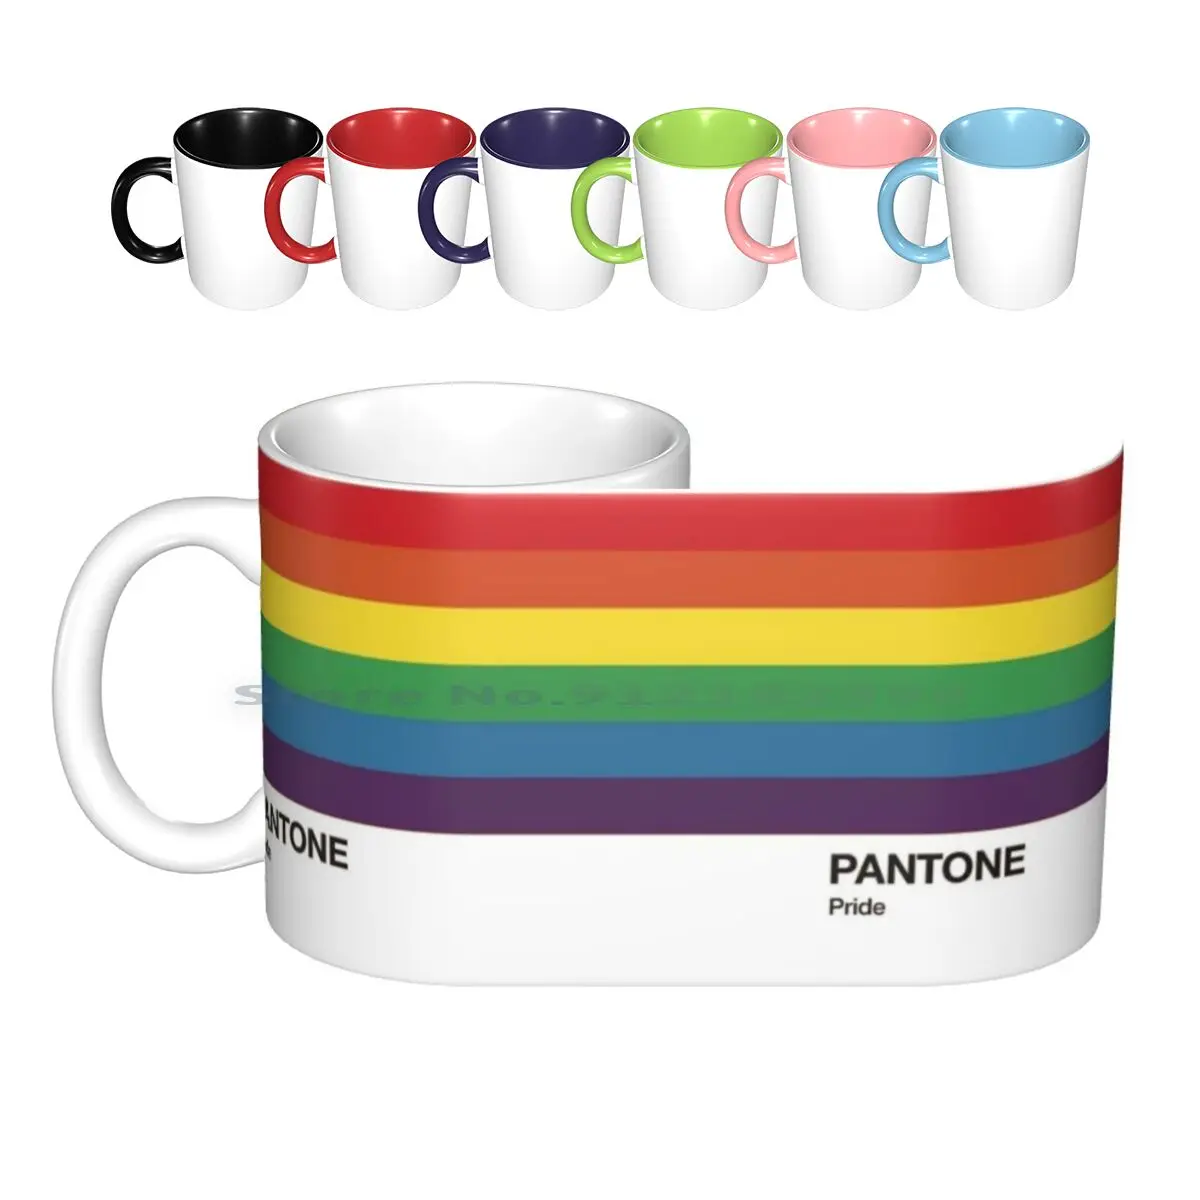 

Кружка Pantone Pride. Керамические кружки, кофейные чашки, Кружка для молока и чая, графический дизайн Pantone, цветная промышленность Eurogames, для геев, ...